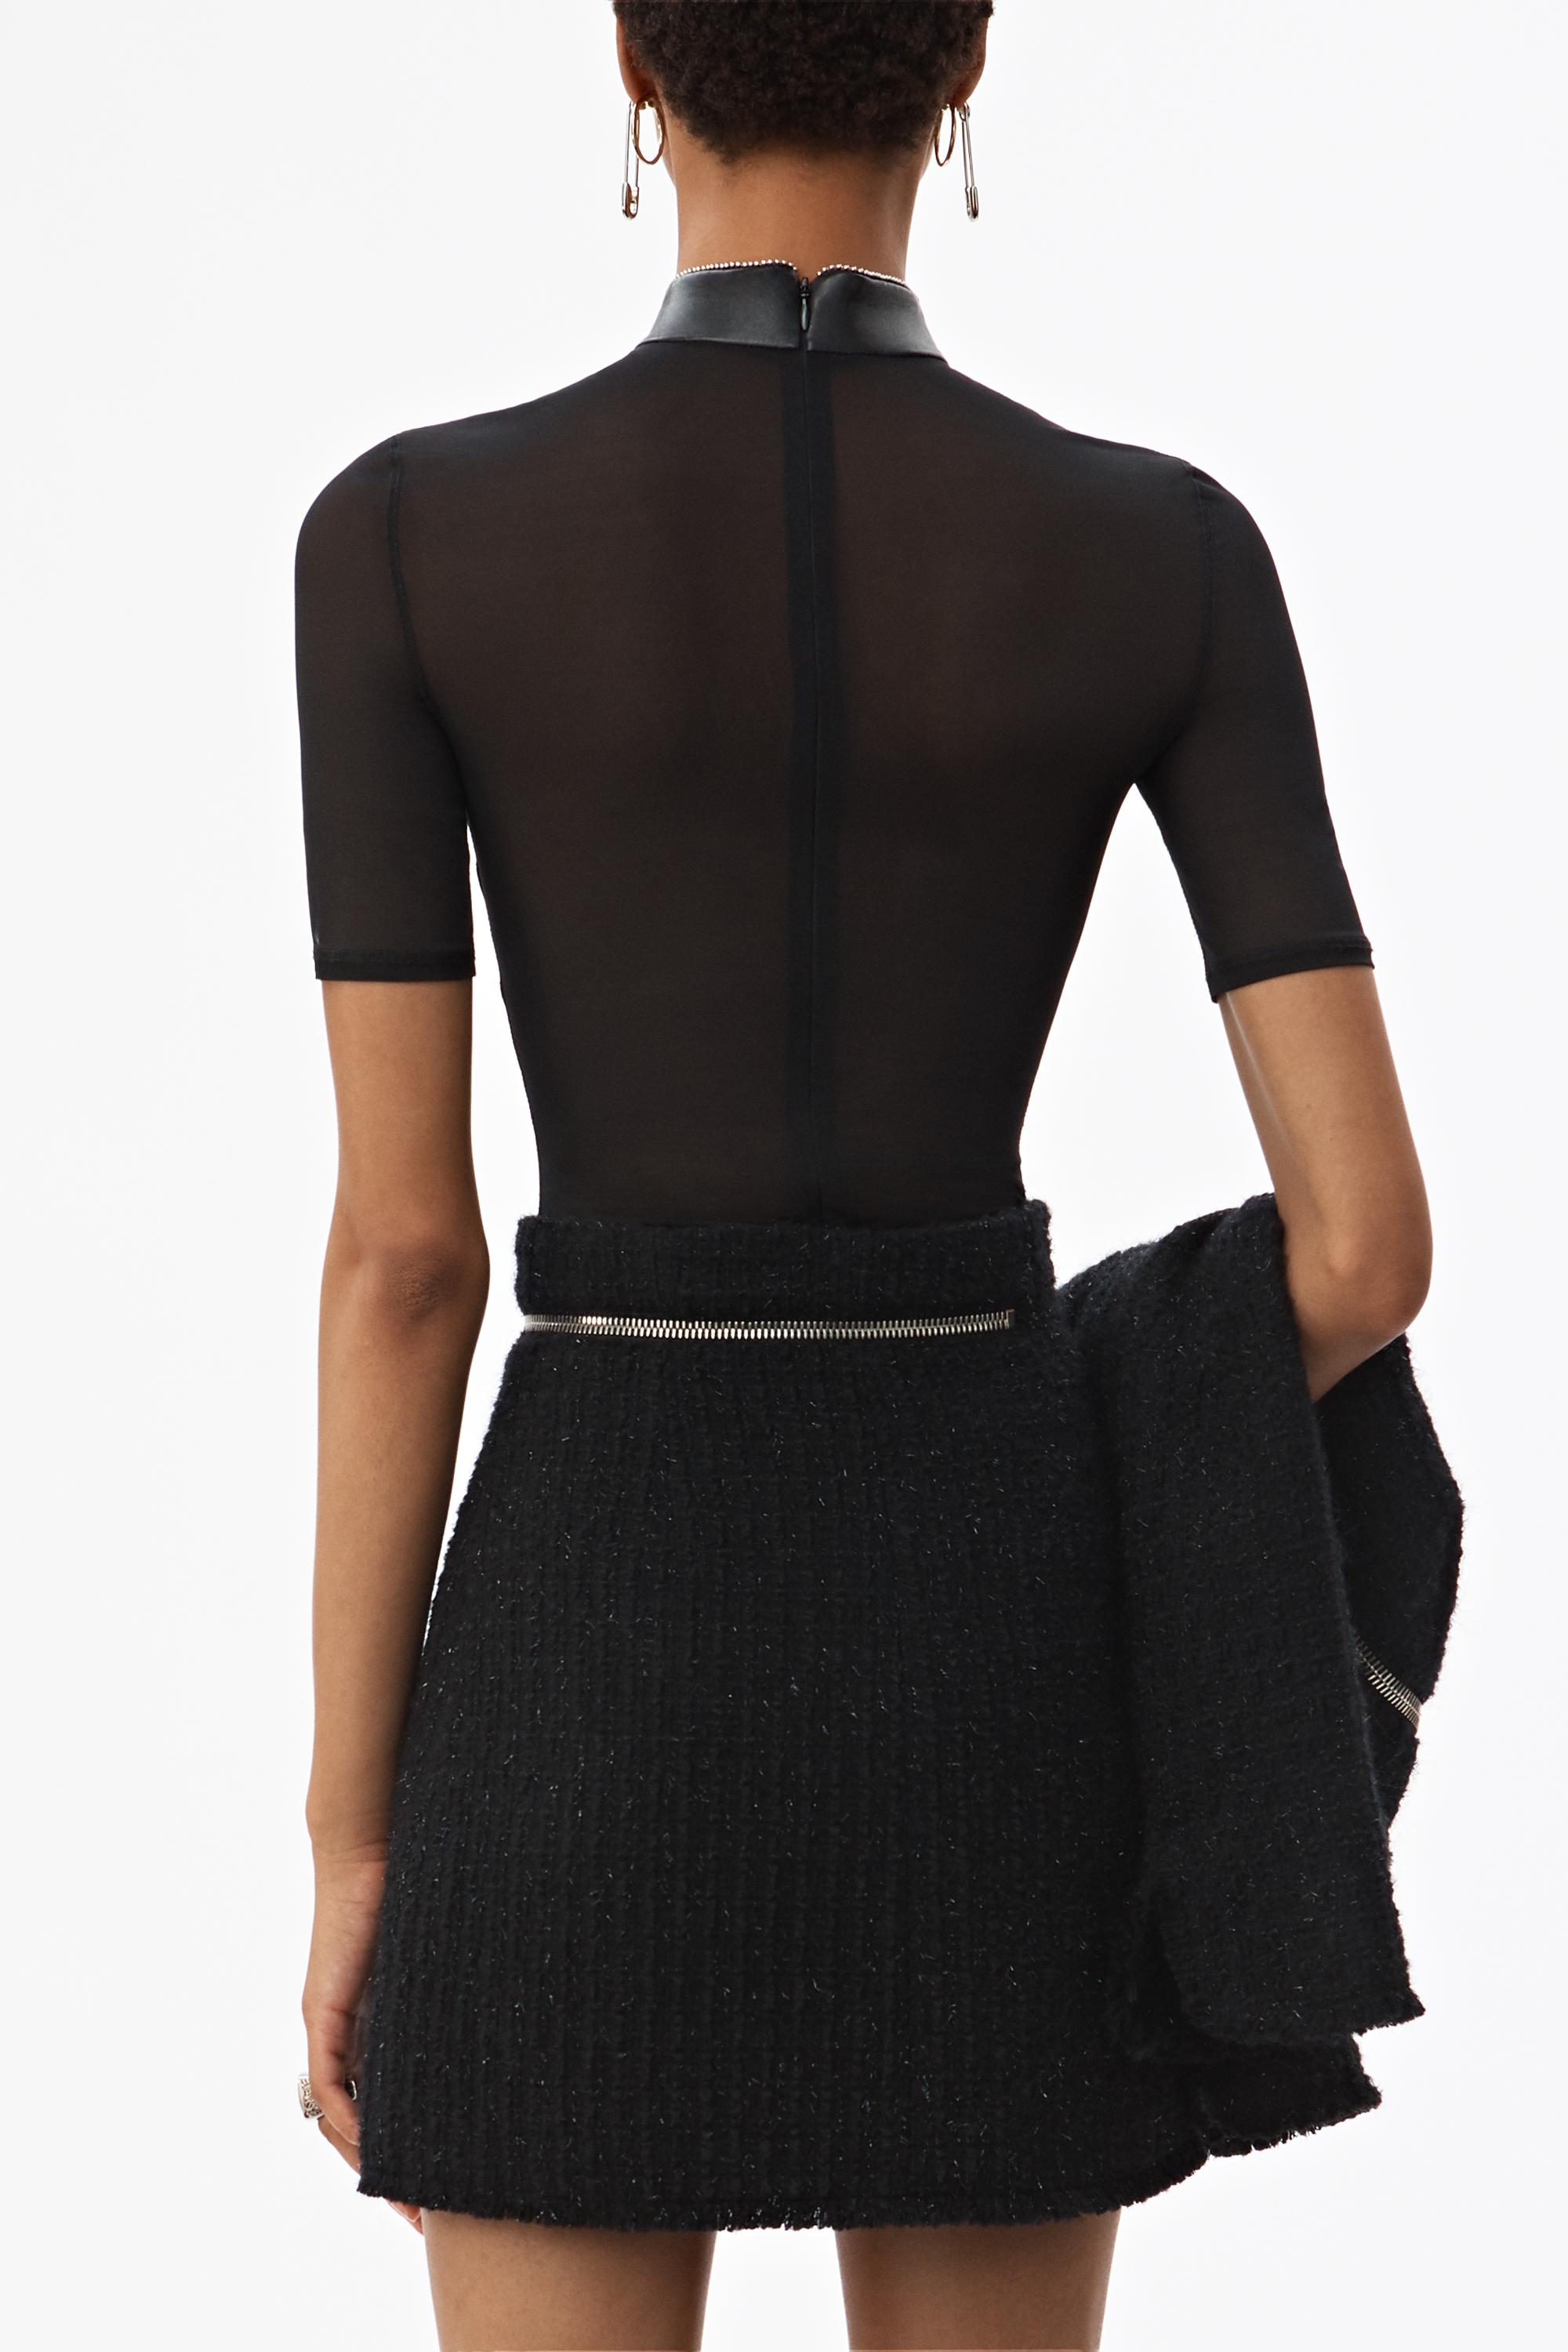 Alexander Wang Tweed Zipper Skirt in Black | Lyst